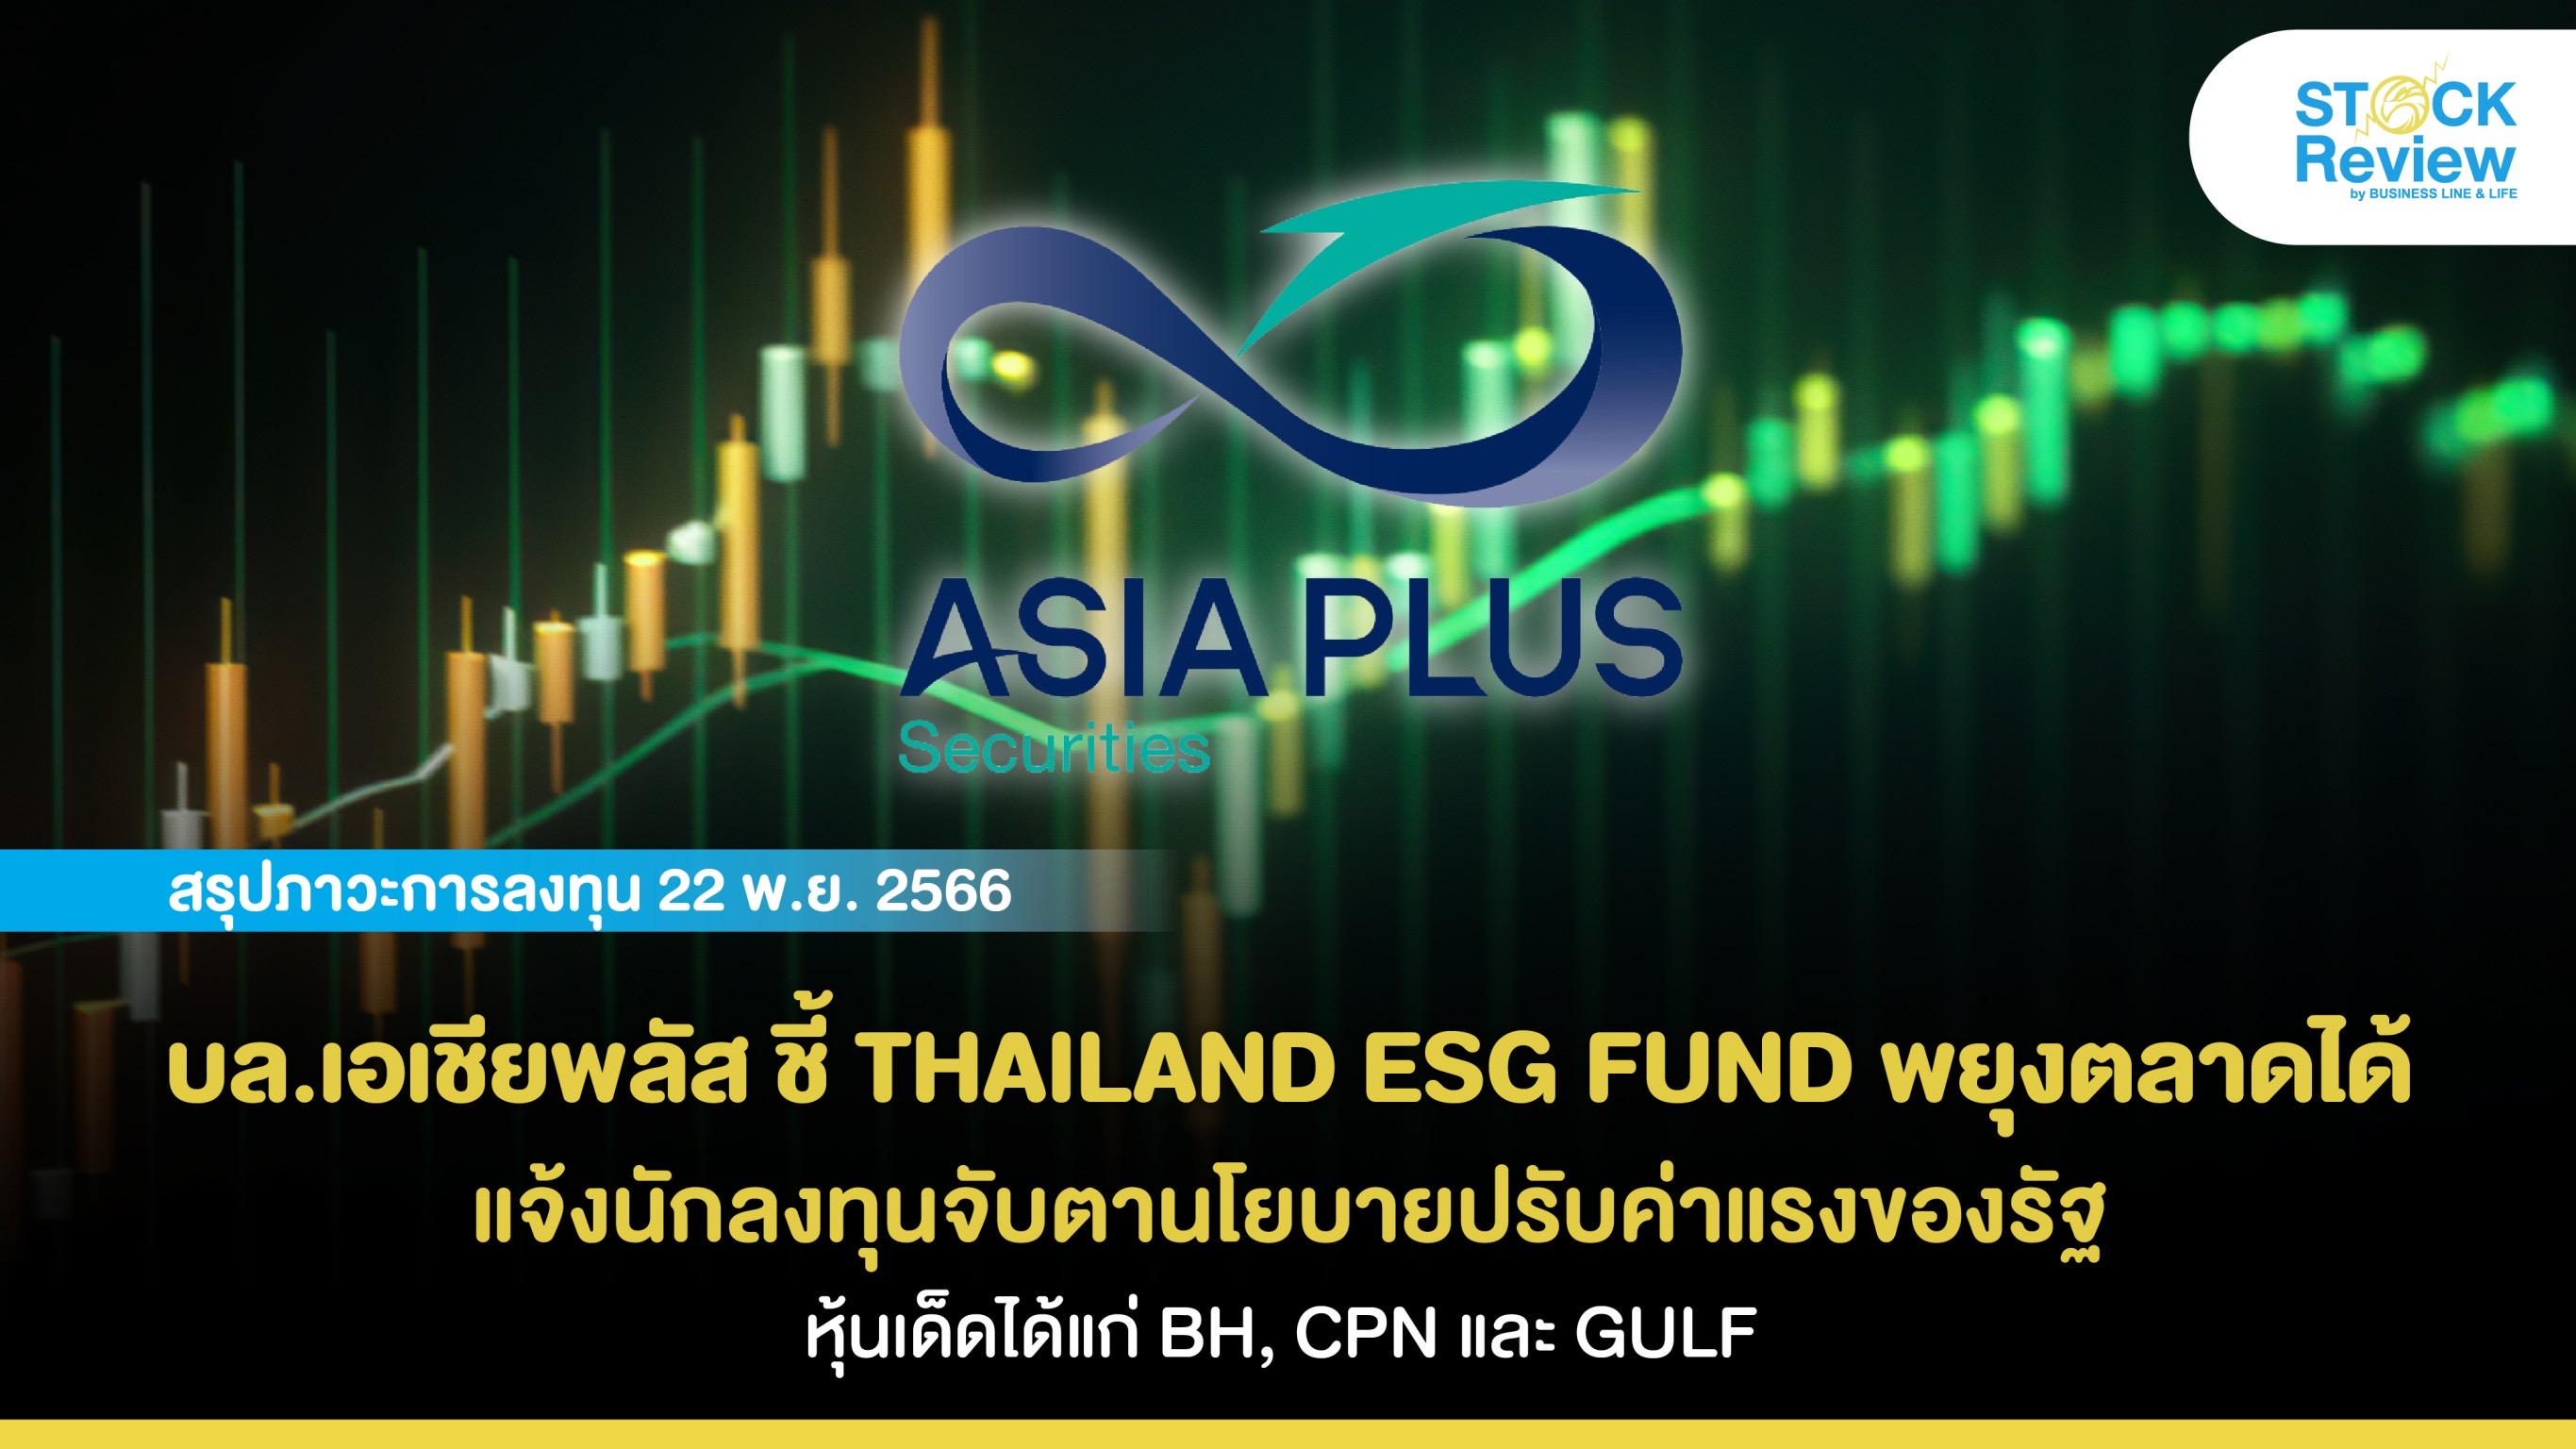 บล.เอเชียพลัส ชี้ THAILAND ESG FUND ช่วยพยุงตลาด แจ้งนักลงทุนจับตานโยบายปรับค่าแรงของรัฐ หุ้นเด็ดได้แก่ BH, CPN และ GULF